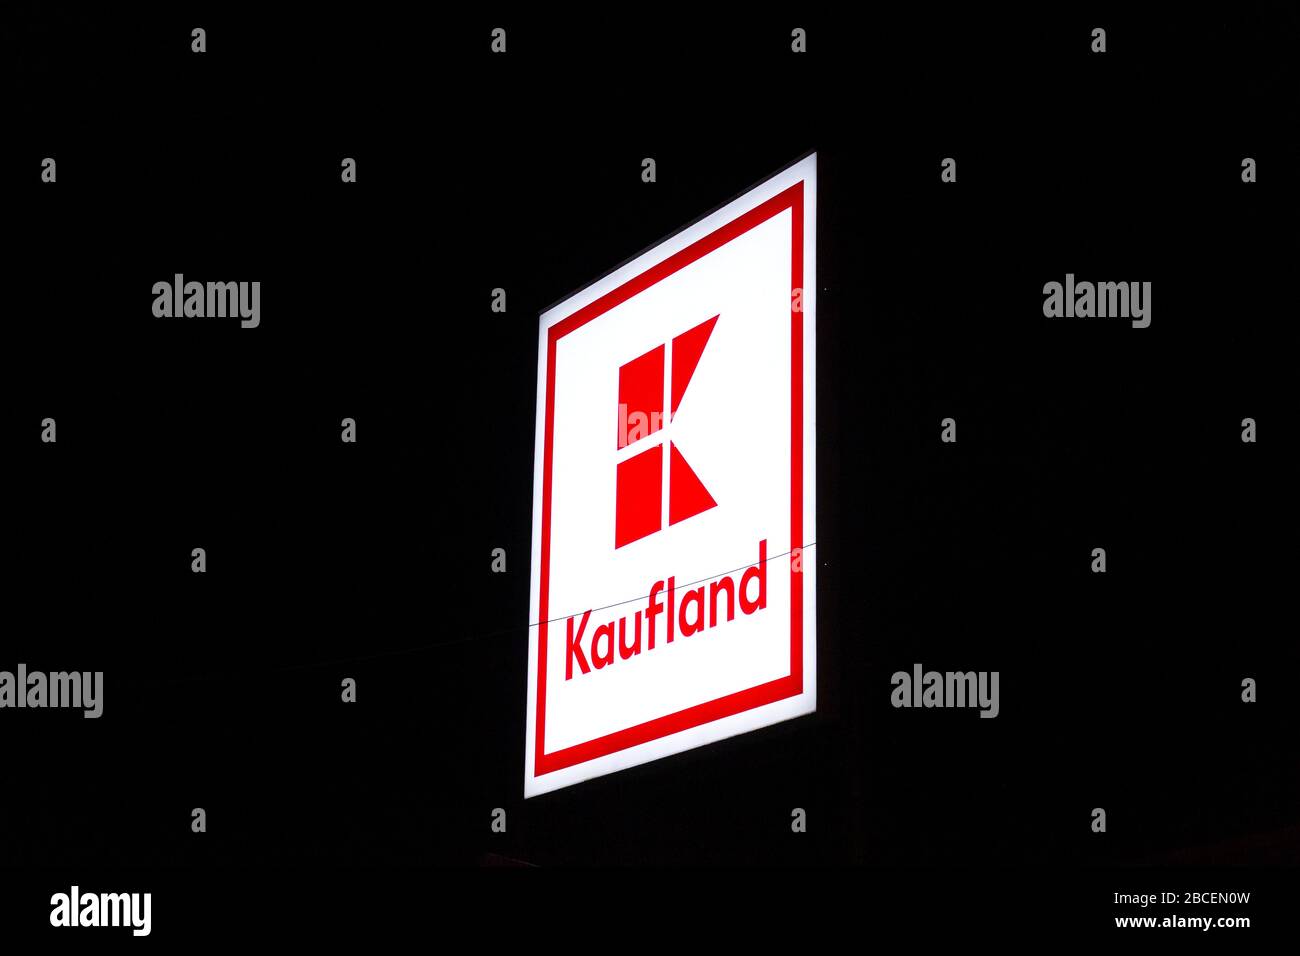 PRAGA, REPUBBLICA CECA - 3 APRILE 2020: Logo aziendale Kaufland di notte sulla costruzione di supermercati della catena tedesca, parte di Schwartz Gruppe Foto Stock